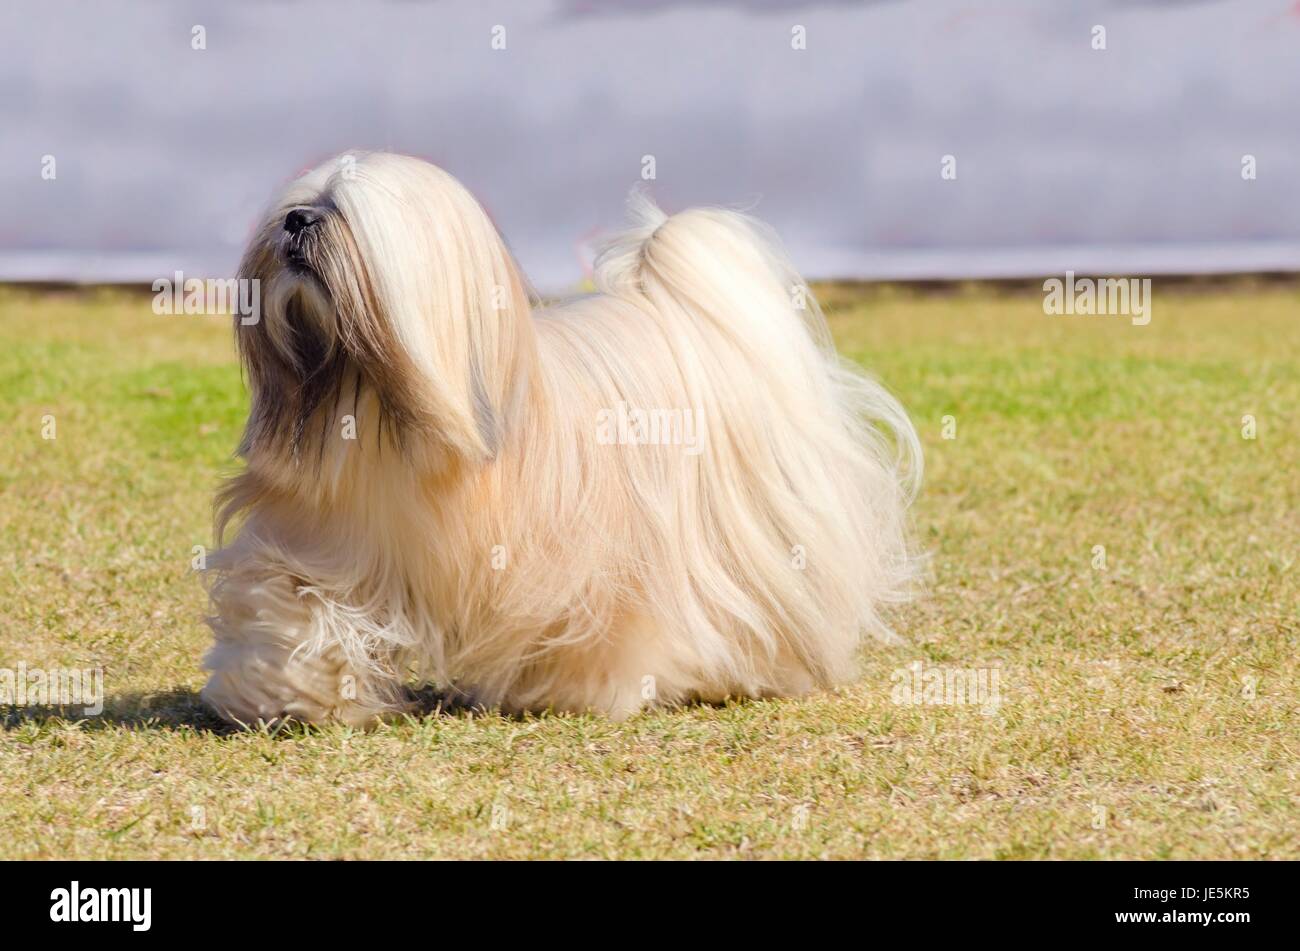 Ein kleiner Junge Licht Tan, beige, Beige, grau und weiß Lhasa Apso Hund mit einem langen, seidigen Fell laufen auf dem Rasen. Die langhaarige, bärtige Lasa Hund hat schwere gerade lange Fell und ist ein Begleithund. Stockfoto